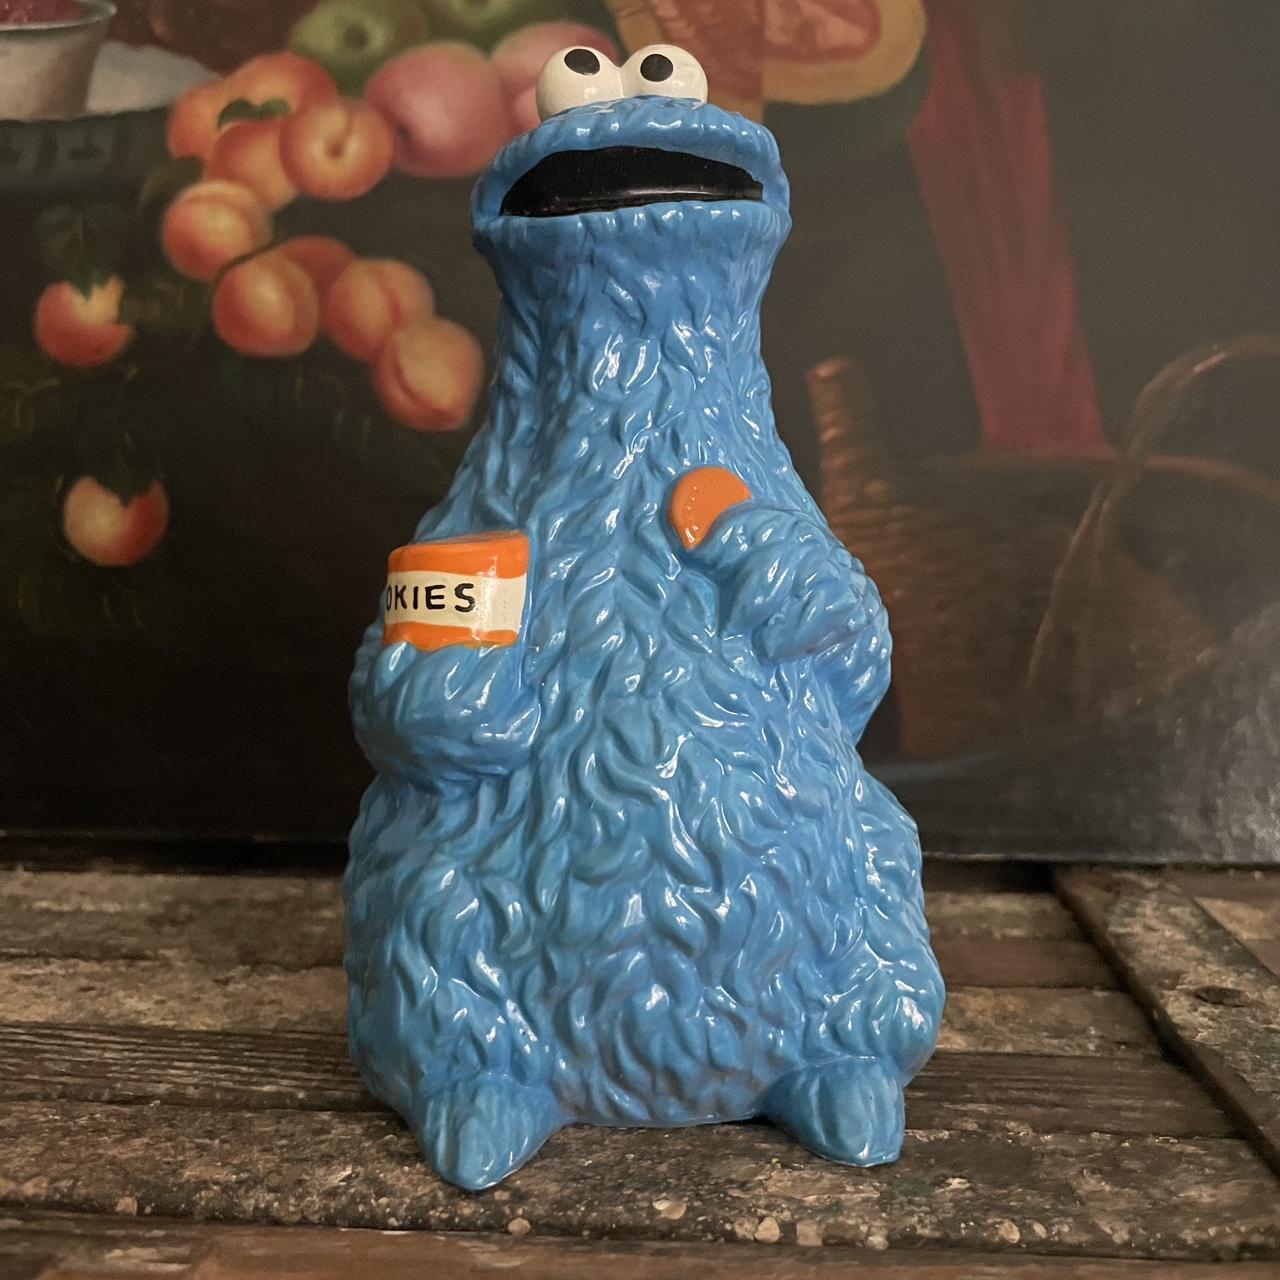 Muppets Sesame Street Cookie Monster Cookie Jar